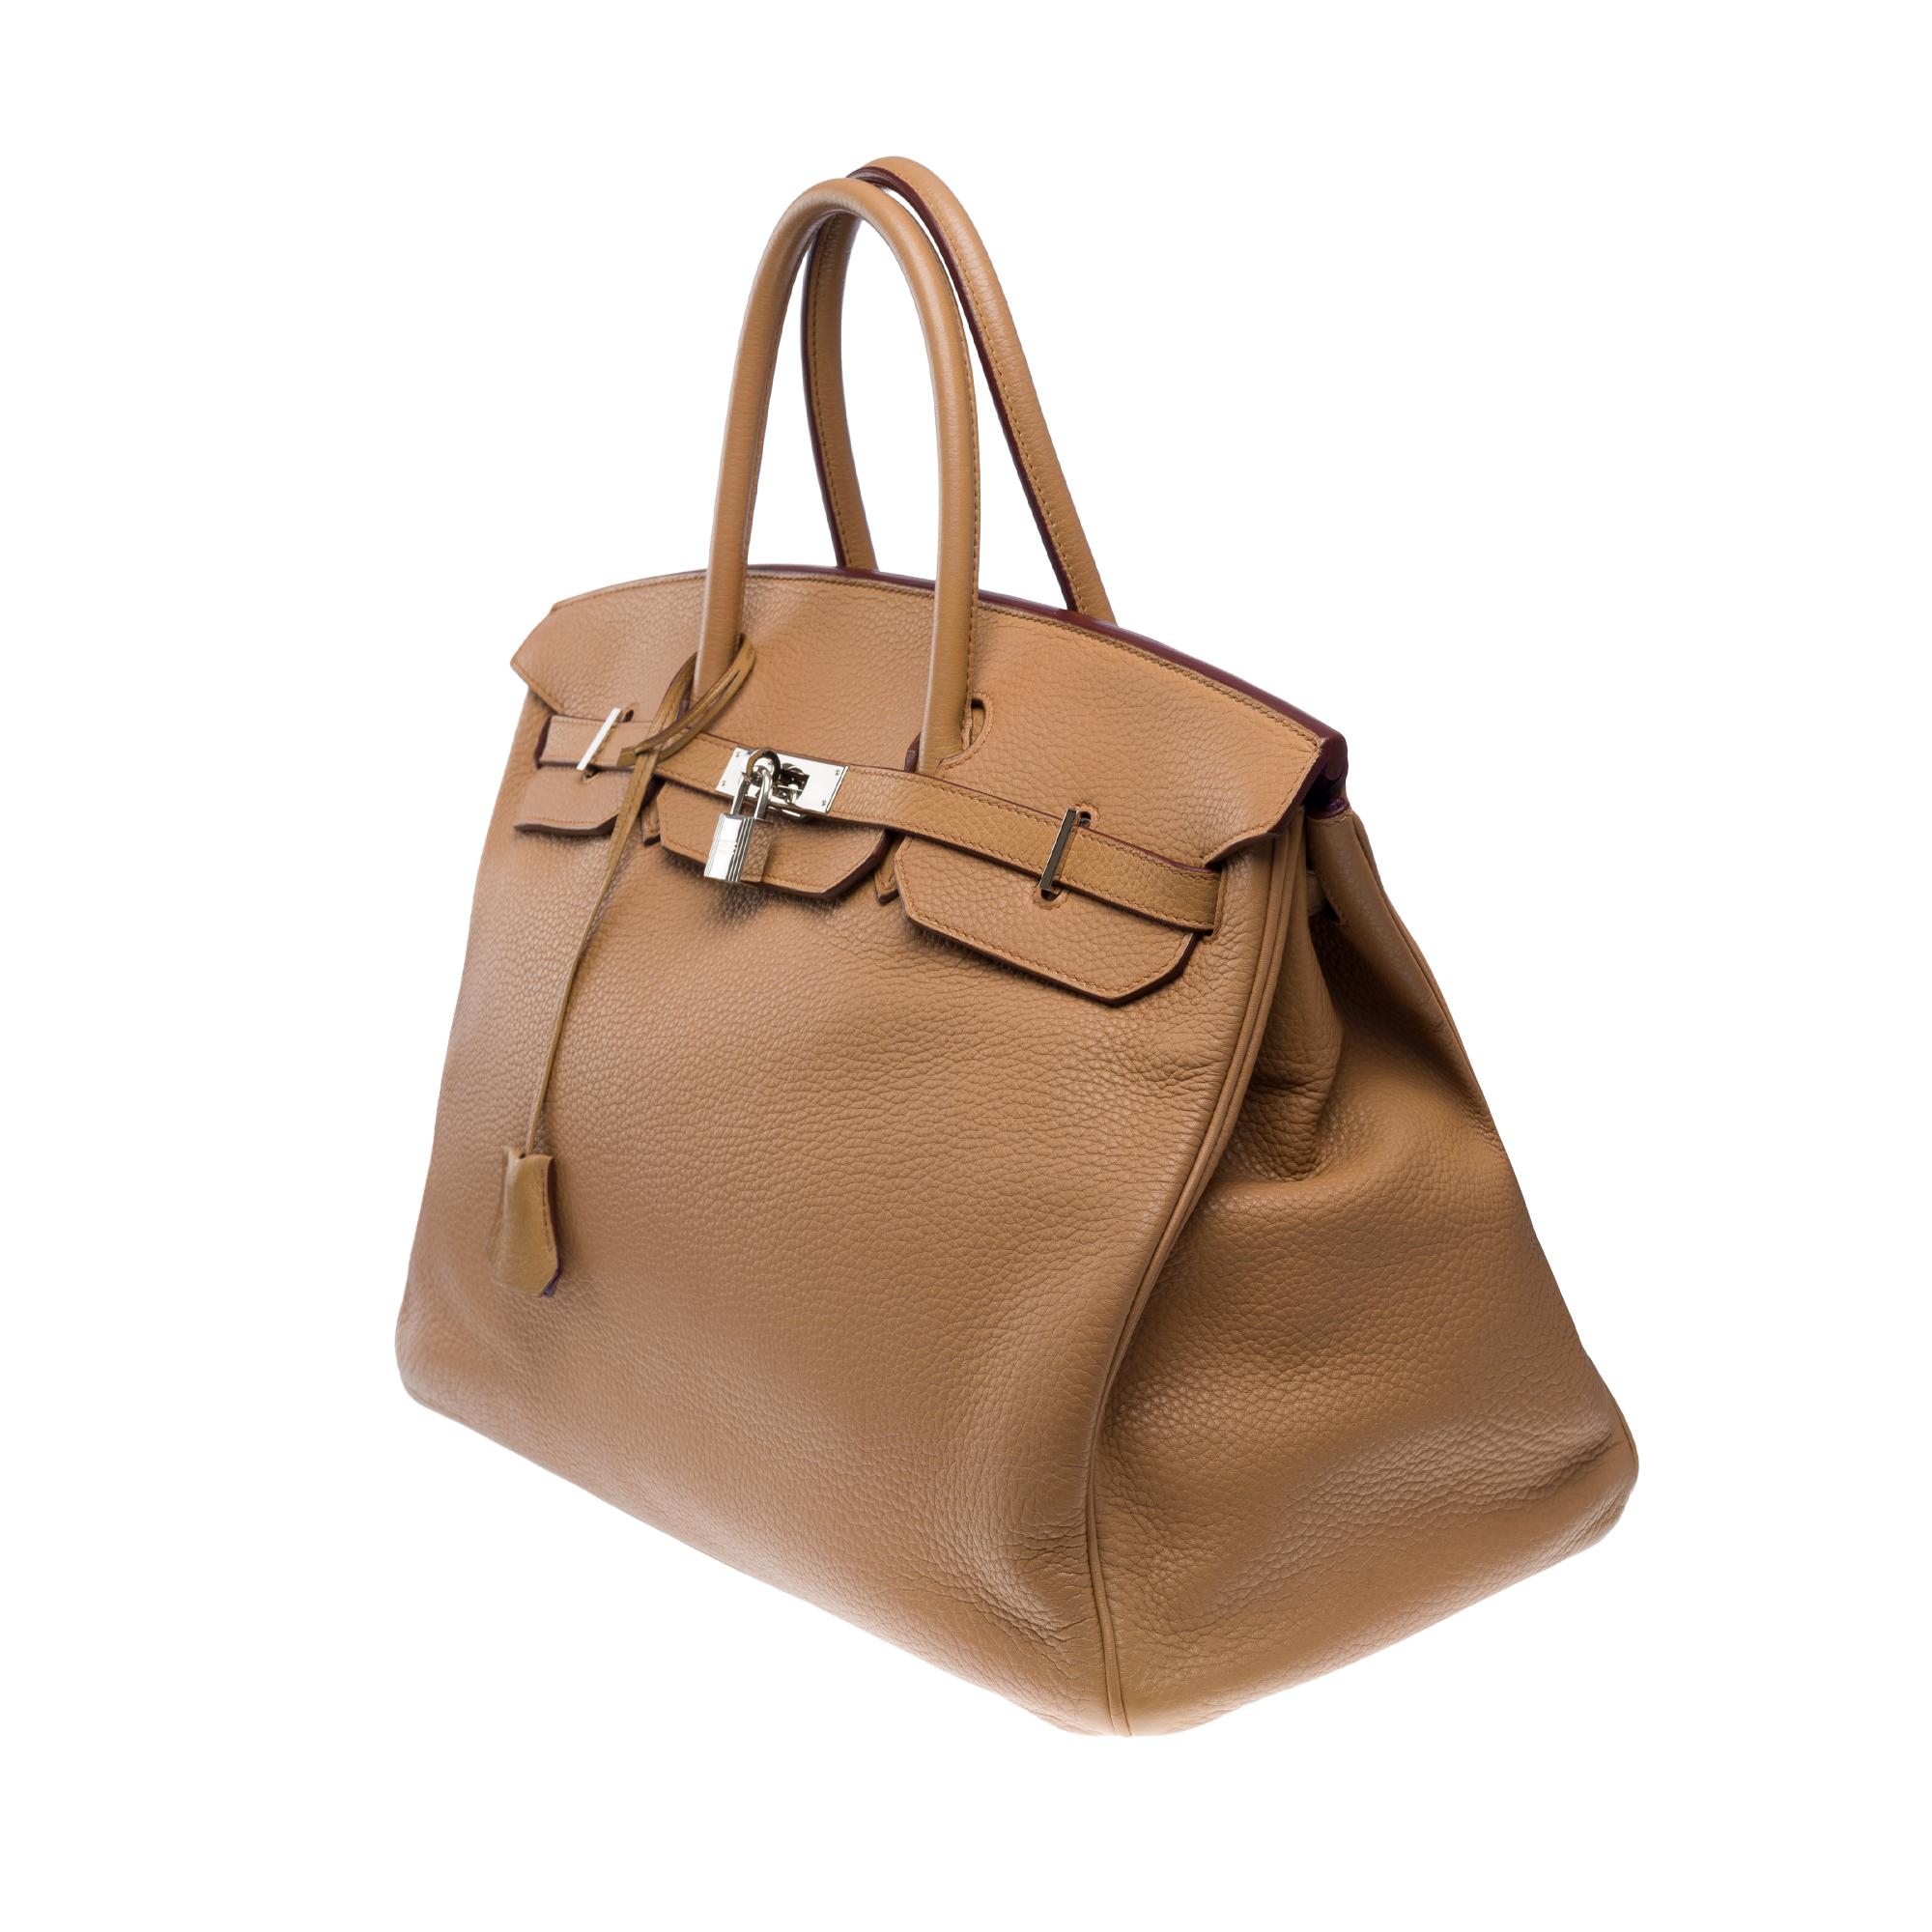 Hermes Birkin 40 handbag in Tabac Togo leather, SHW For Sale 1